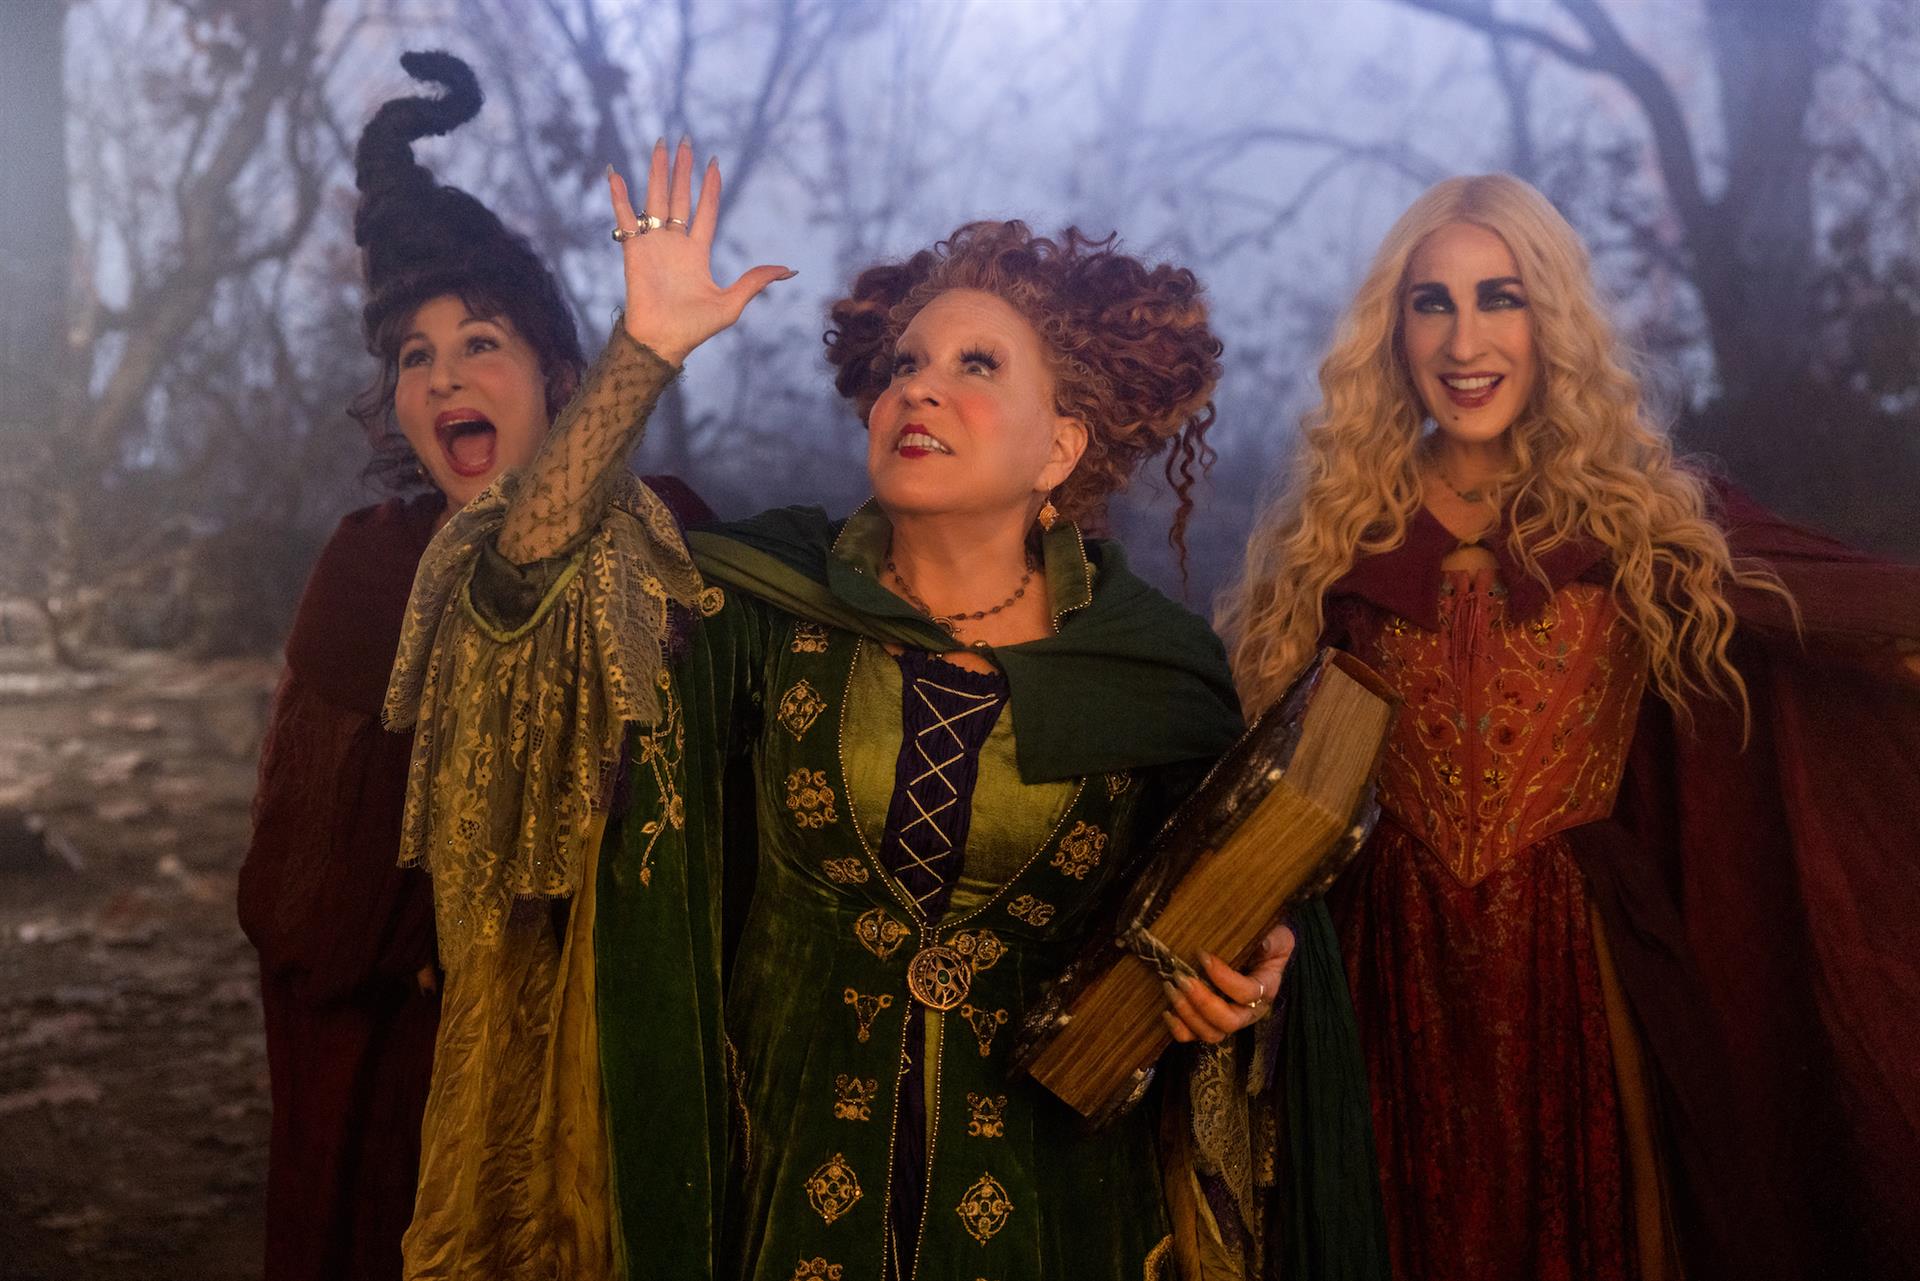 Las brujas de Salem regresan con humor y mucha nostalgia en "Hocus Pocus 2"